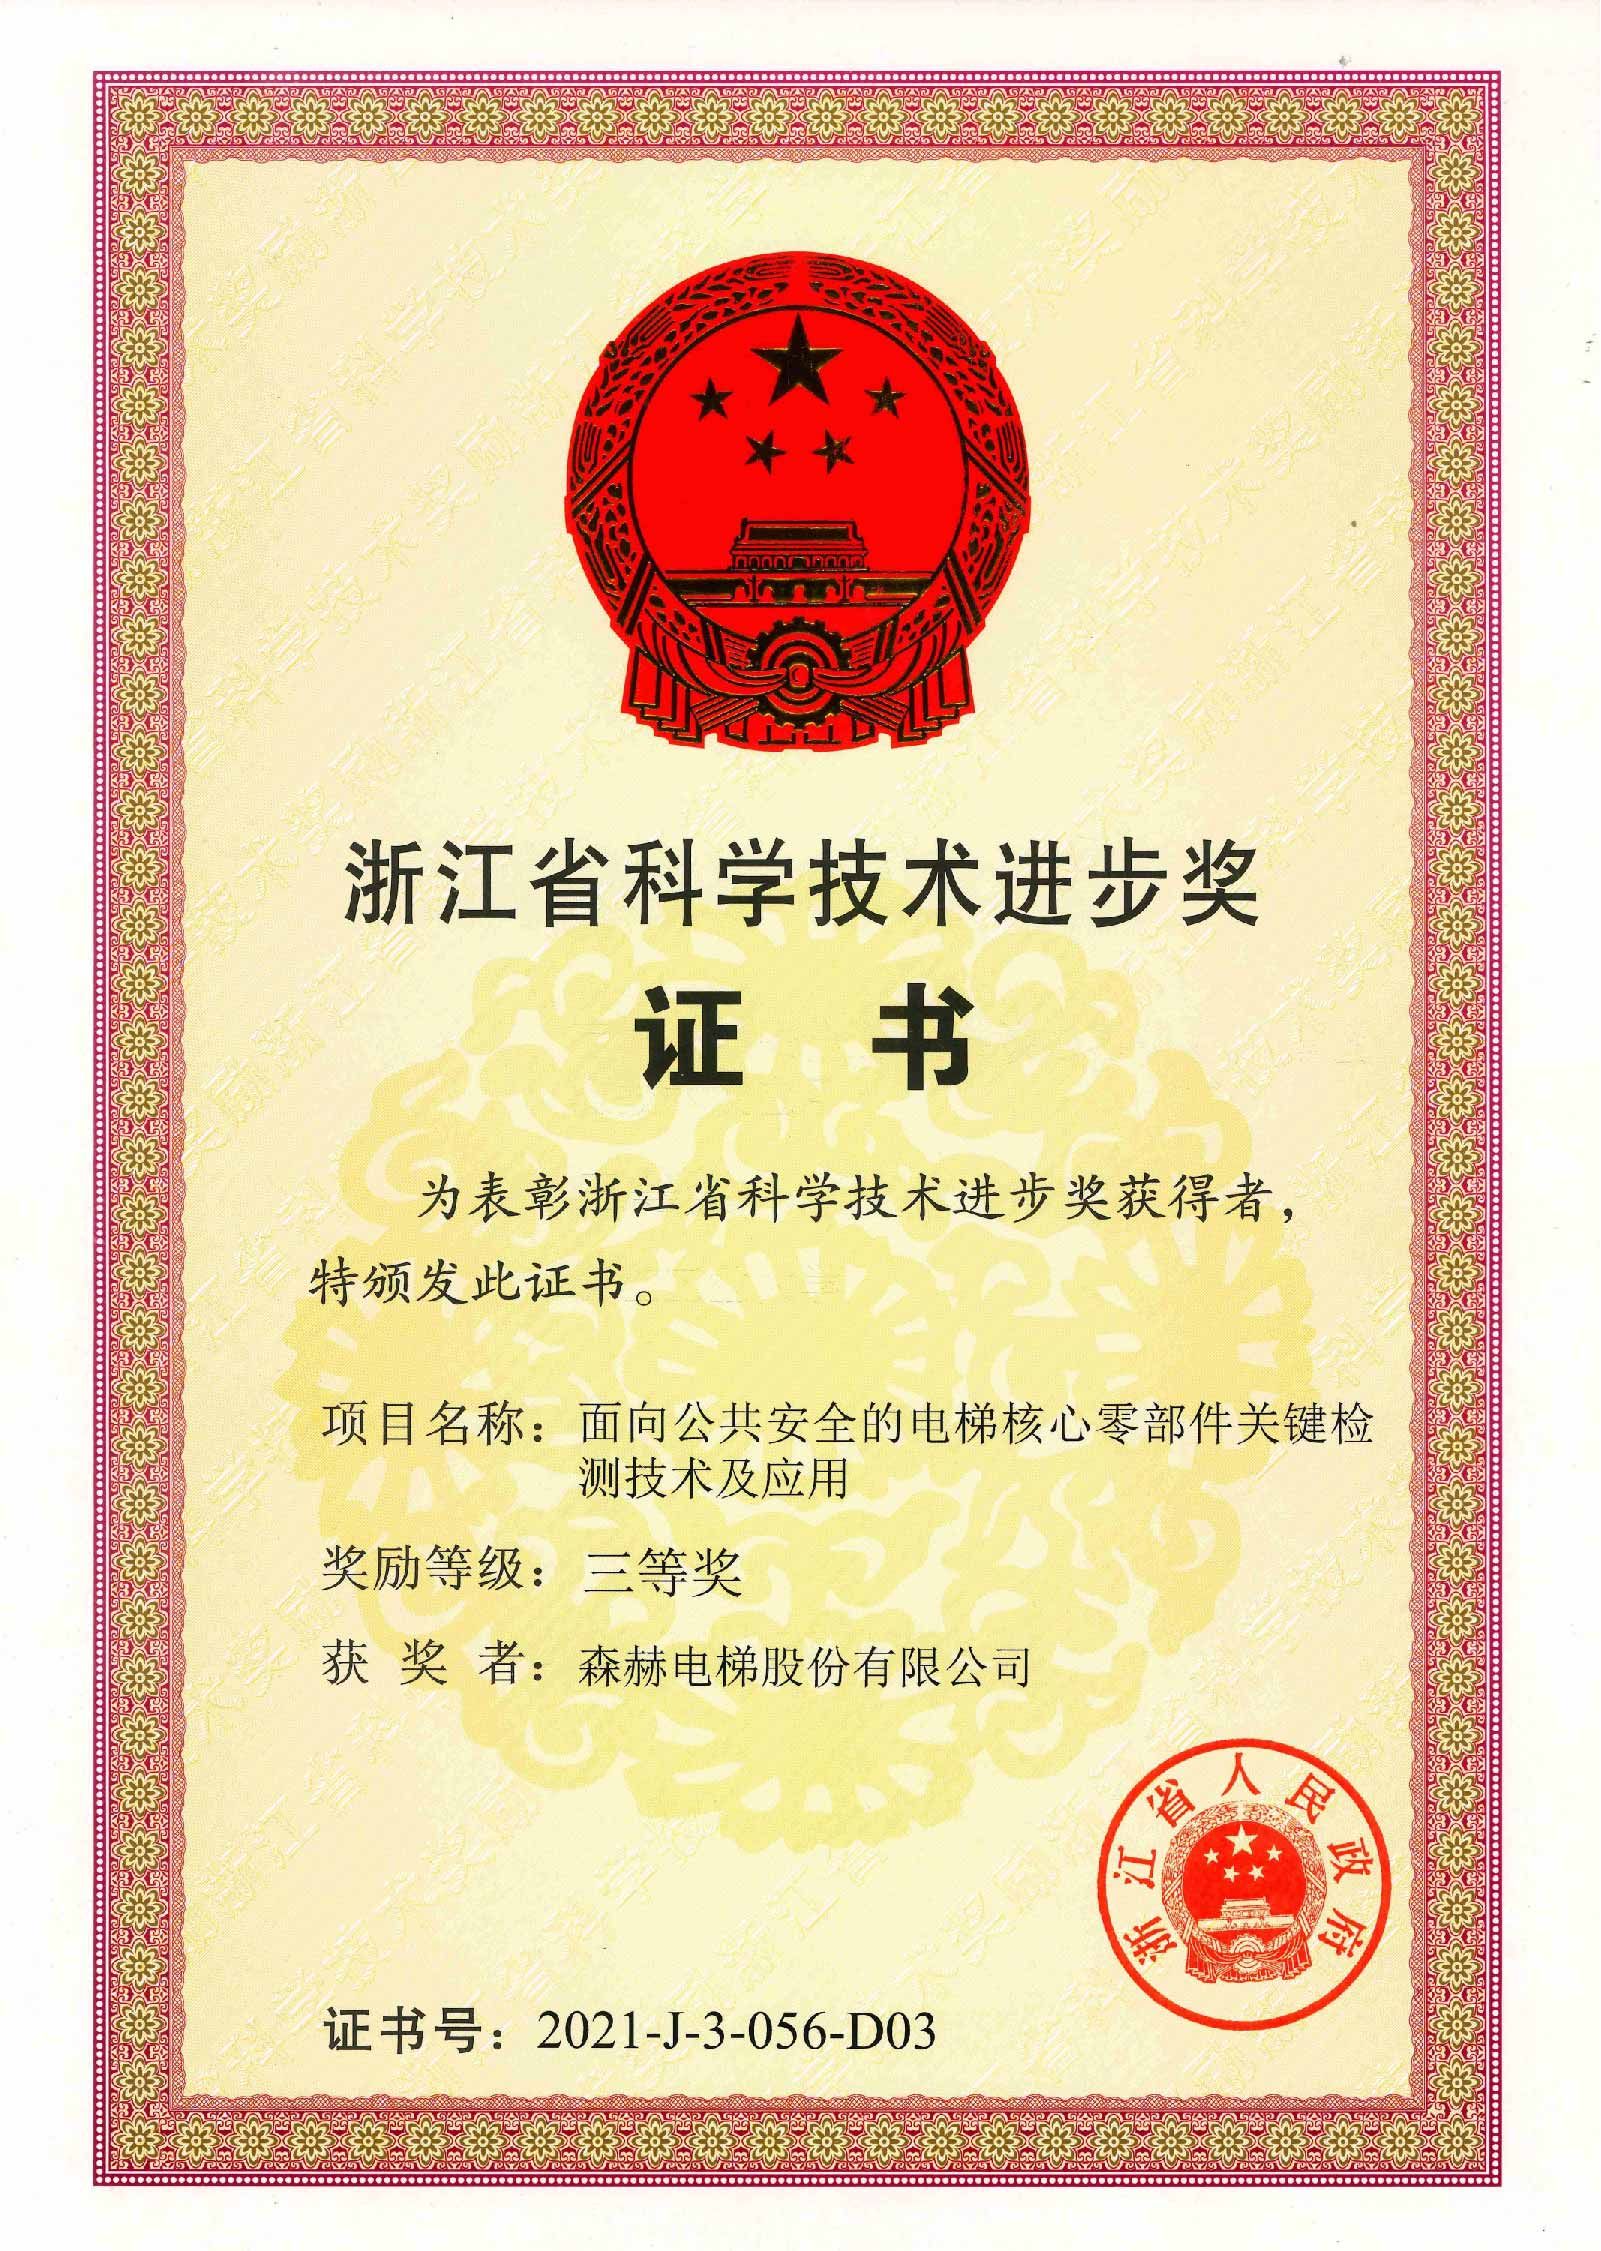 森赫电梯荣获浙江省科学技术进步奖 